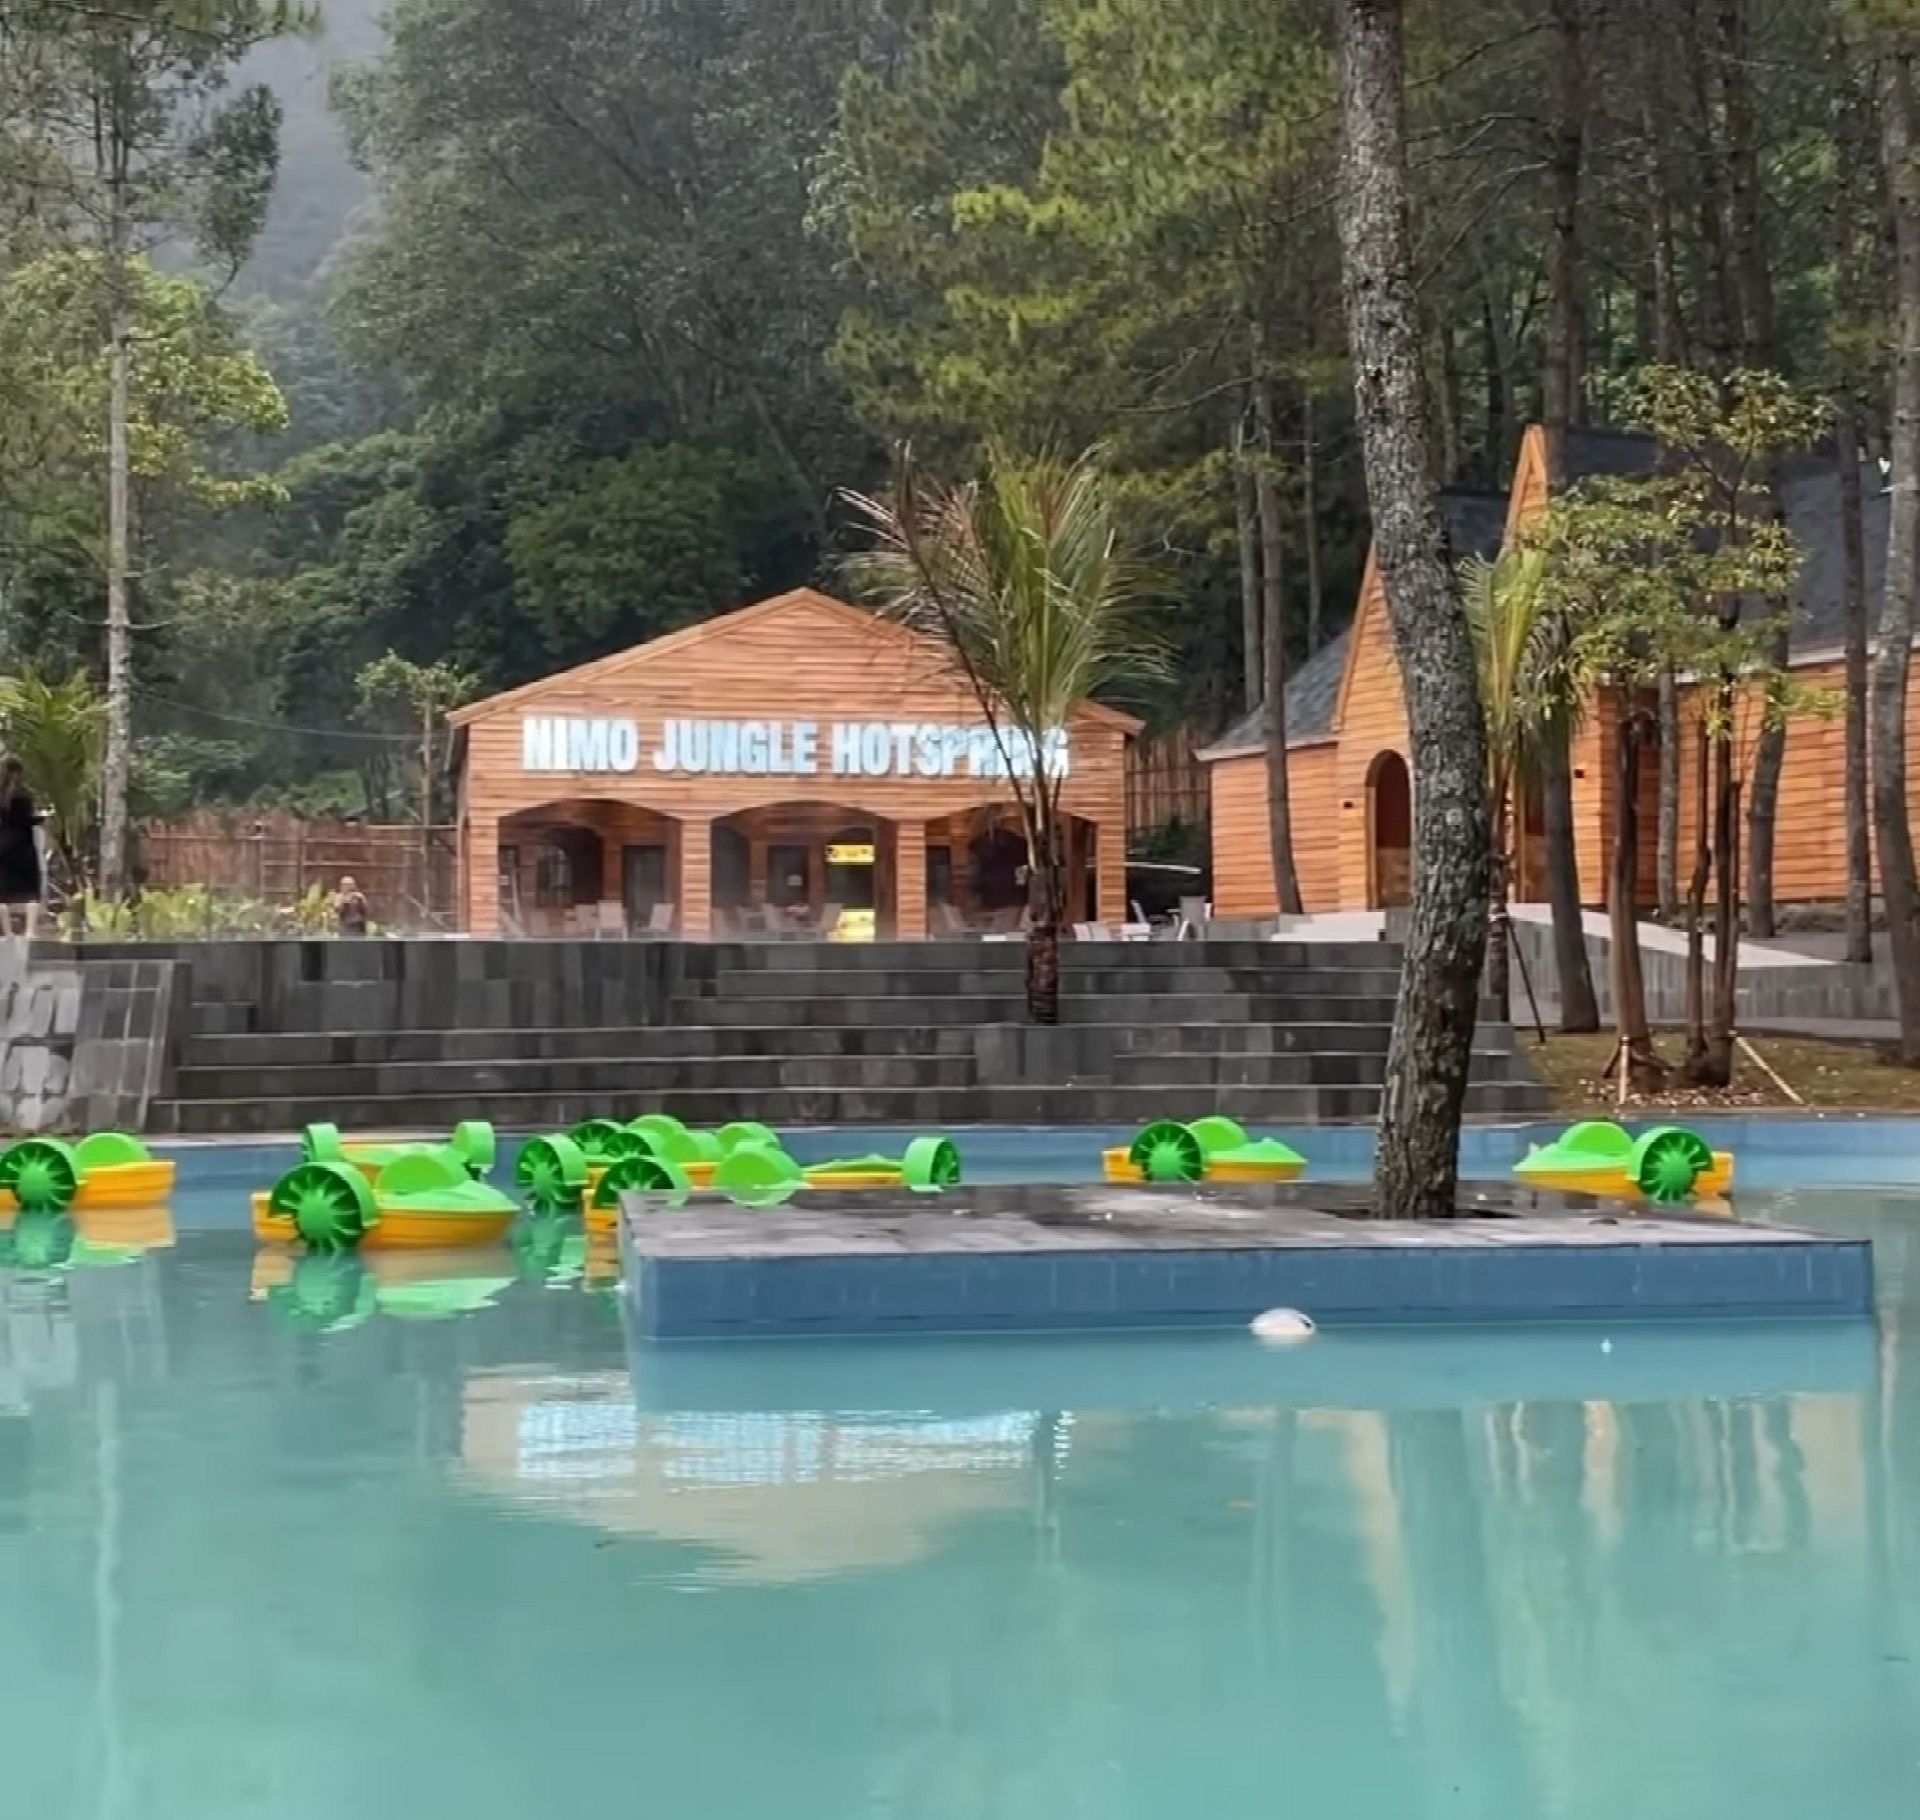  Nimo Jungle Hotspring salah satu tempat wisata di Ciwidey Bandung